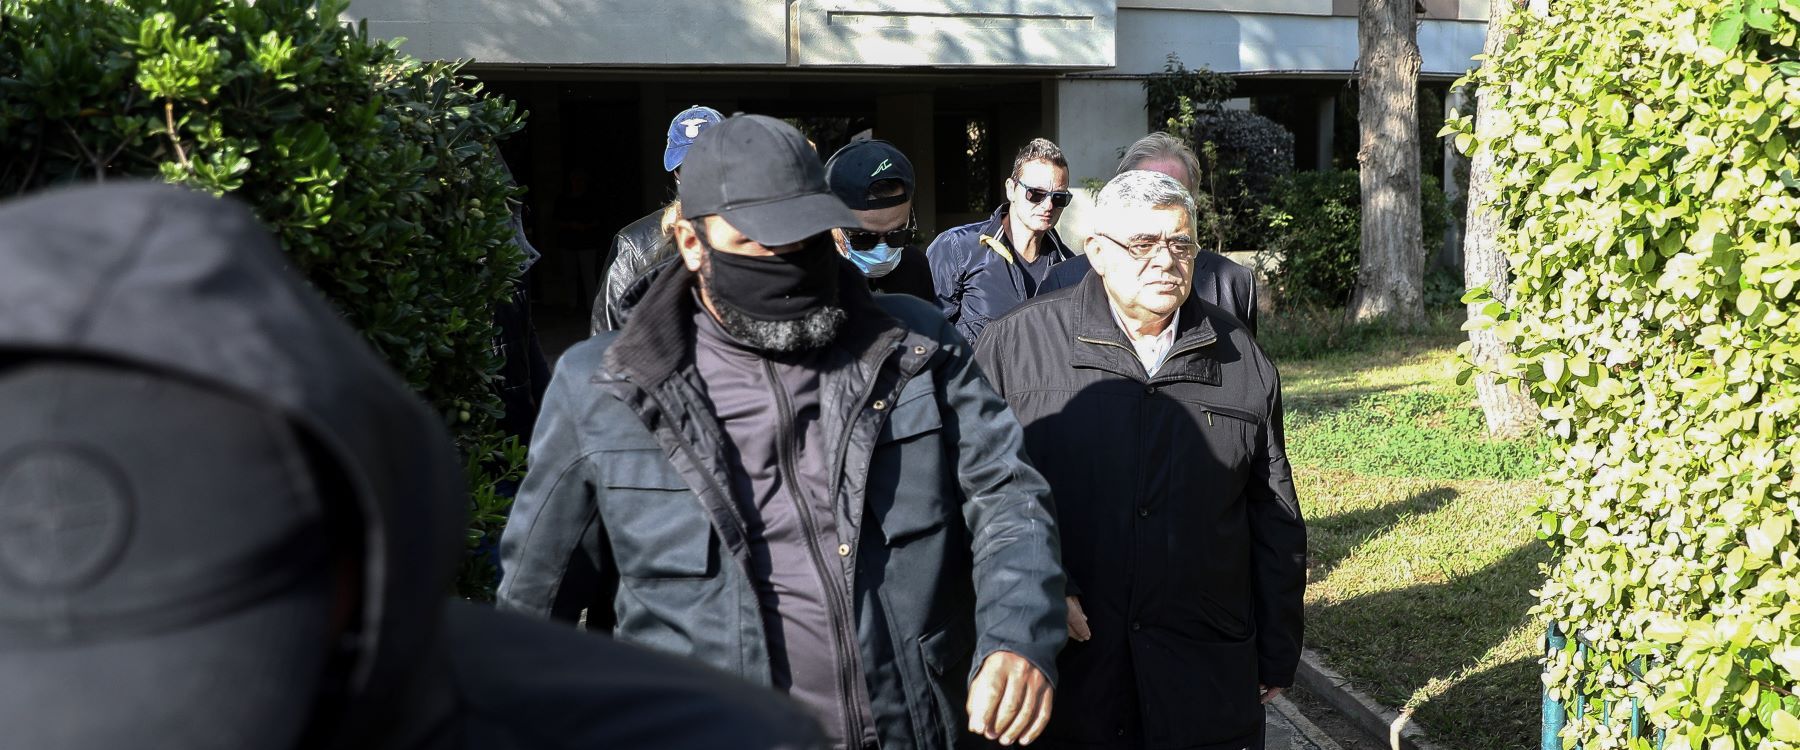 Νίκος Μιχαλολιάκος αποφυλάκιση: Έξω υπό όρους ο αρχηγός της Χρυσής Αυγής